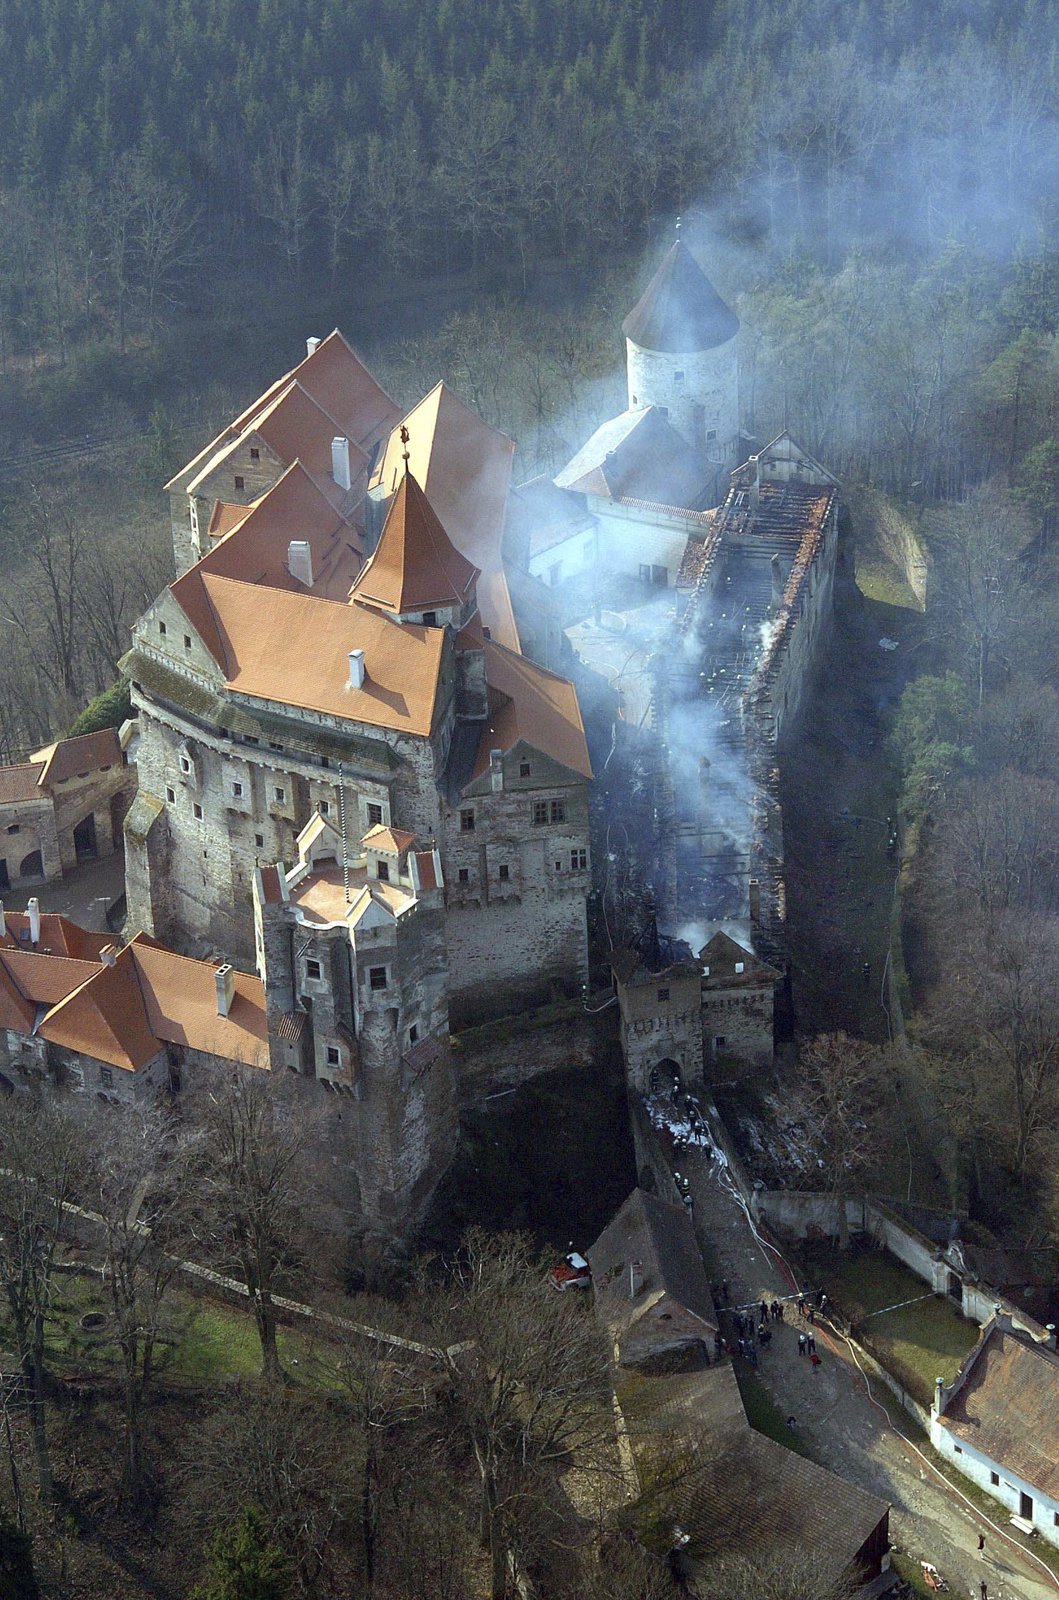 Hrad Pernštejn. Duben 2005. Před 11 lety vzplál gotický hrad Pernštejn, shořela střecha z počátku 19. století i část depozitáře. Podle hasičů bylo příčinou chemické samovznícení. Rekonstrukce stála téměř 100 milionů.